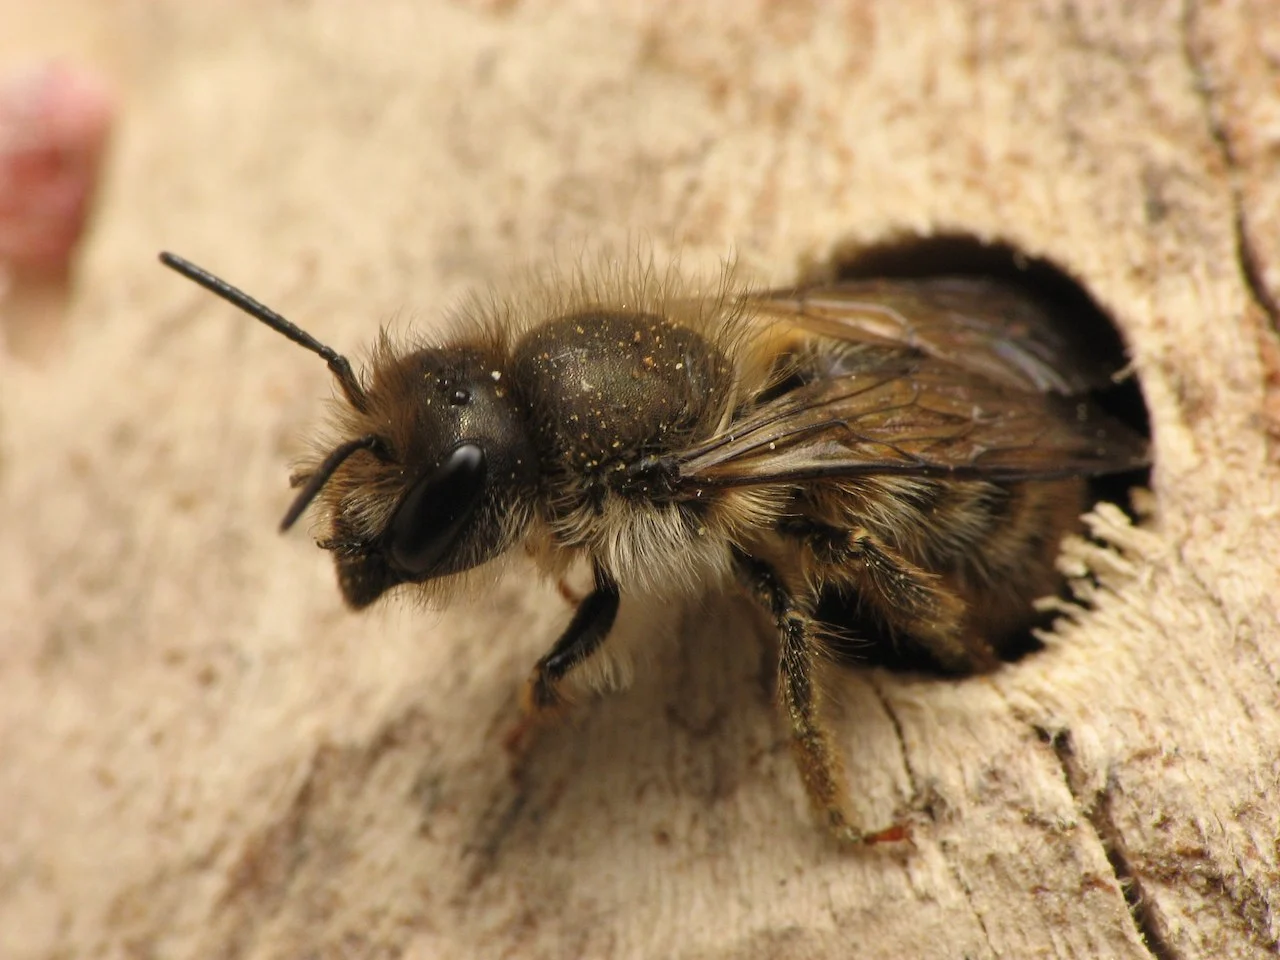 Osmia cornifrons (non-native mason bee)